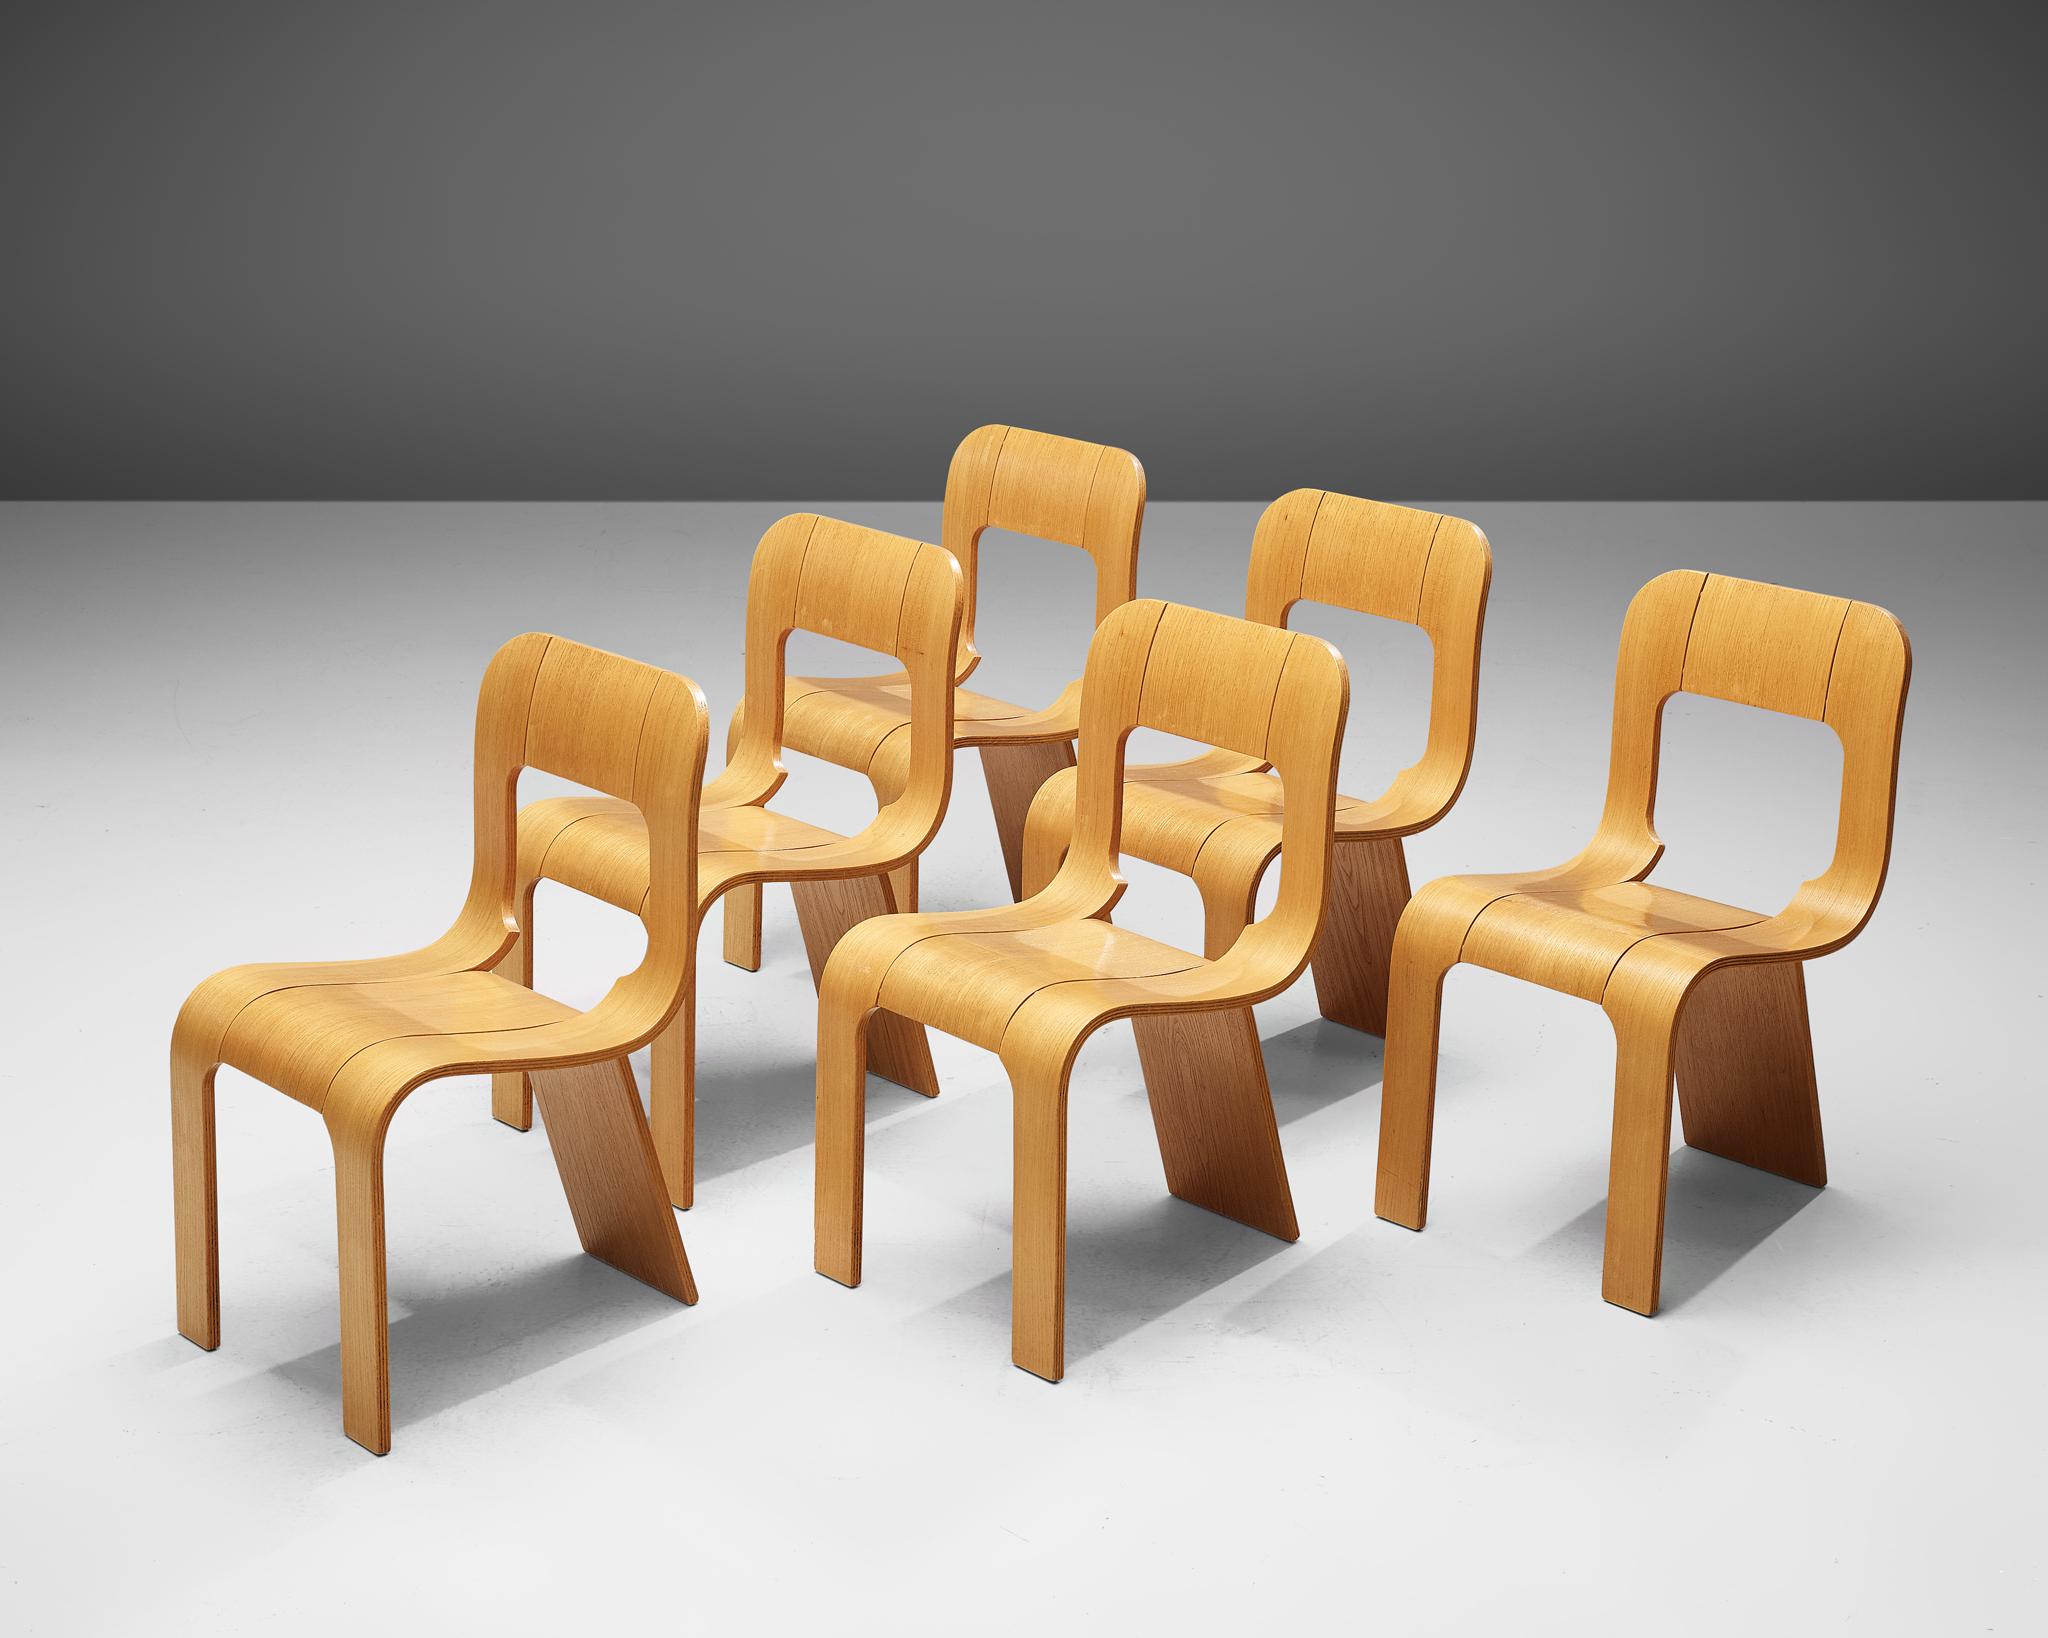 Gigi Sabadin pour Stilwood, ensemble de six chaises, contreplaqué de frêne, Italie, années 1970.

Design inventif de l'Italien Gigi Sabadin, ces chaises sont fabriquées en contreplaqué de frêne cintré avec une finition plaquée. Le design organique